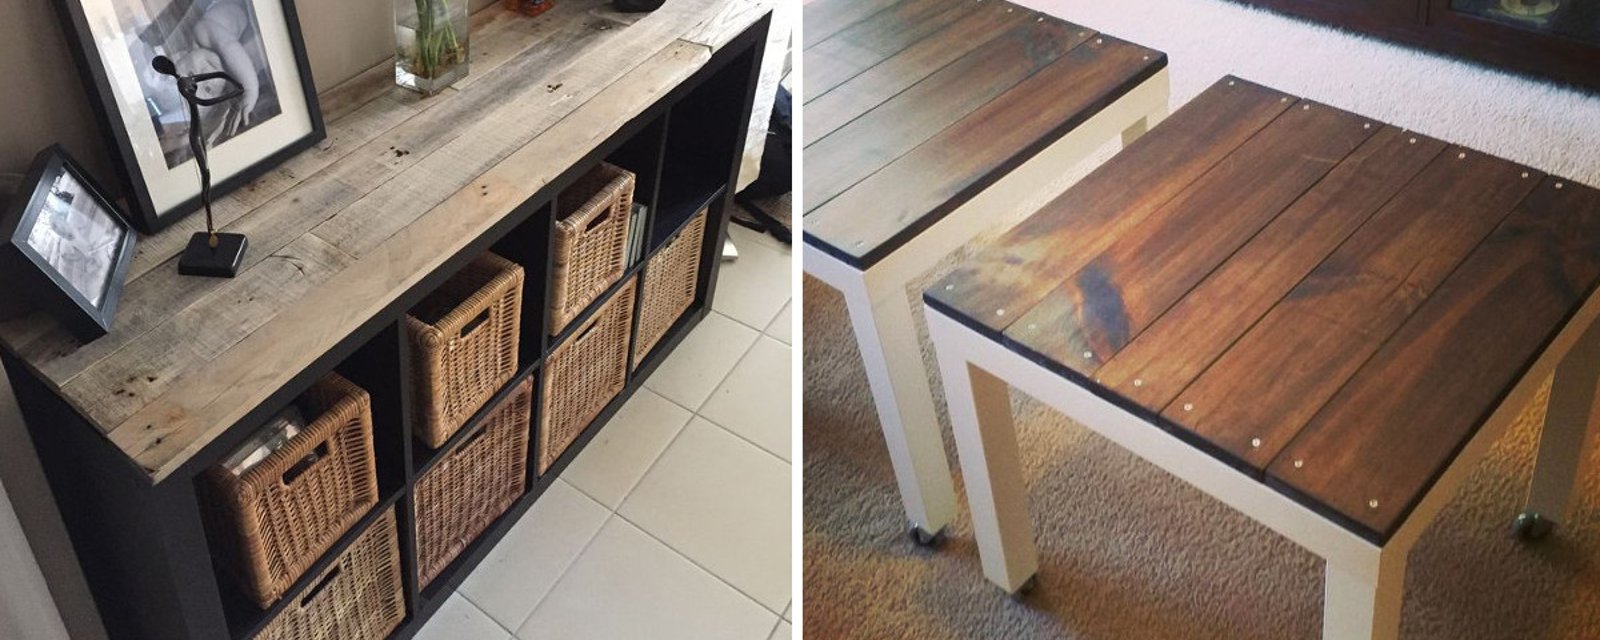 Relookez un vieux meuble Ikea avec du bois de palettes! 20 belles idées pour marier le bois et les meubles modernes! 